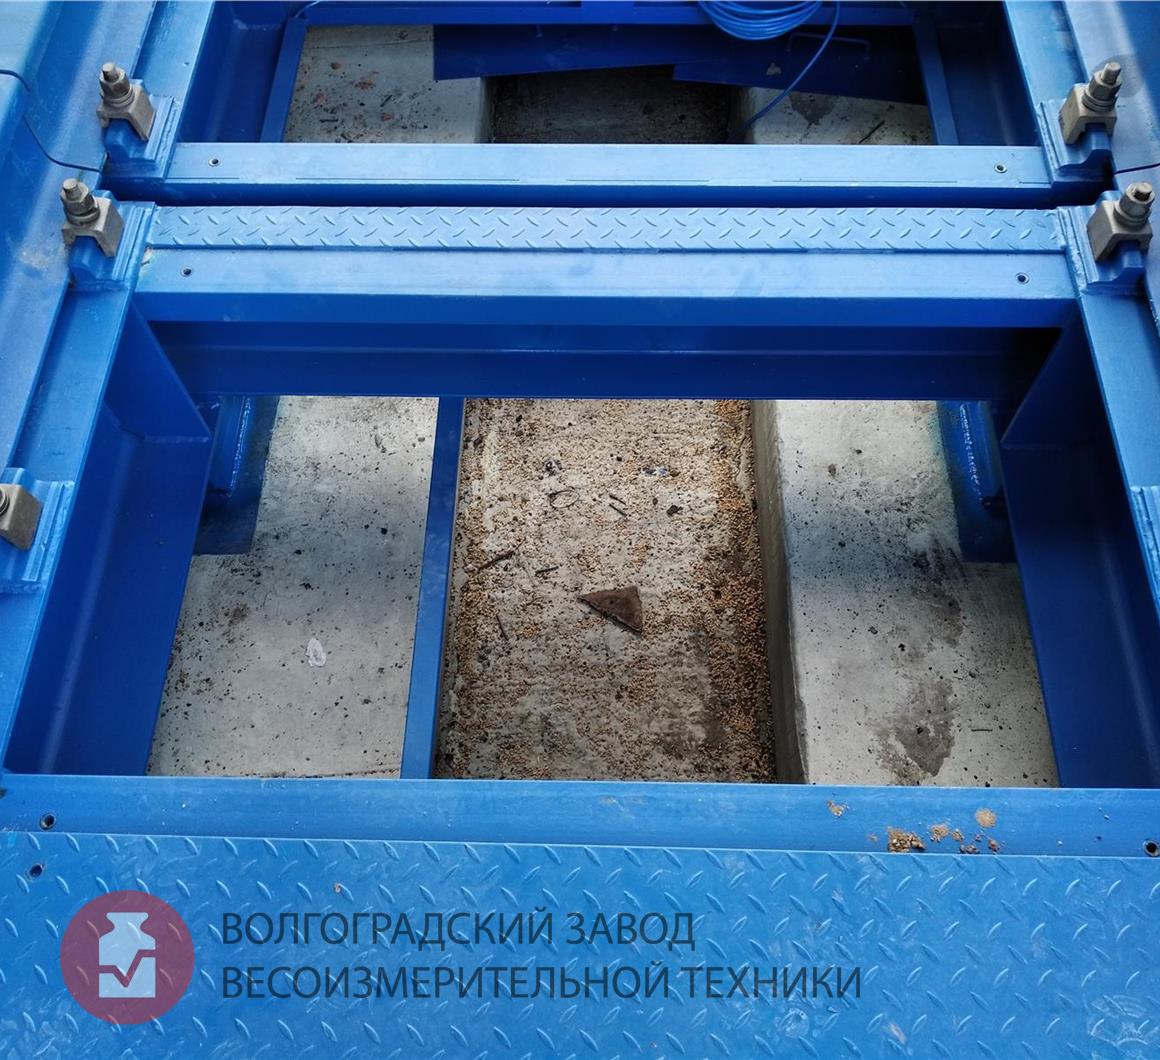 Вагонные весы БАМ на бетонном фундаменте (сняты защитные крышки)